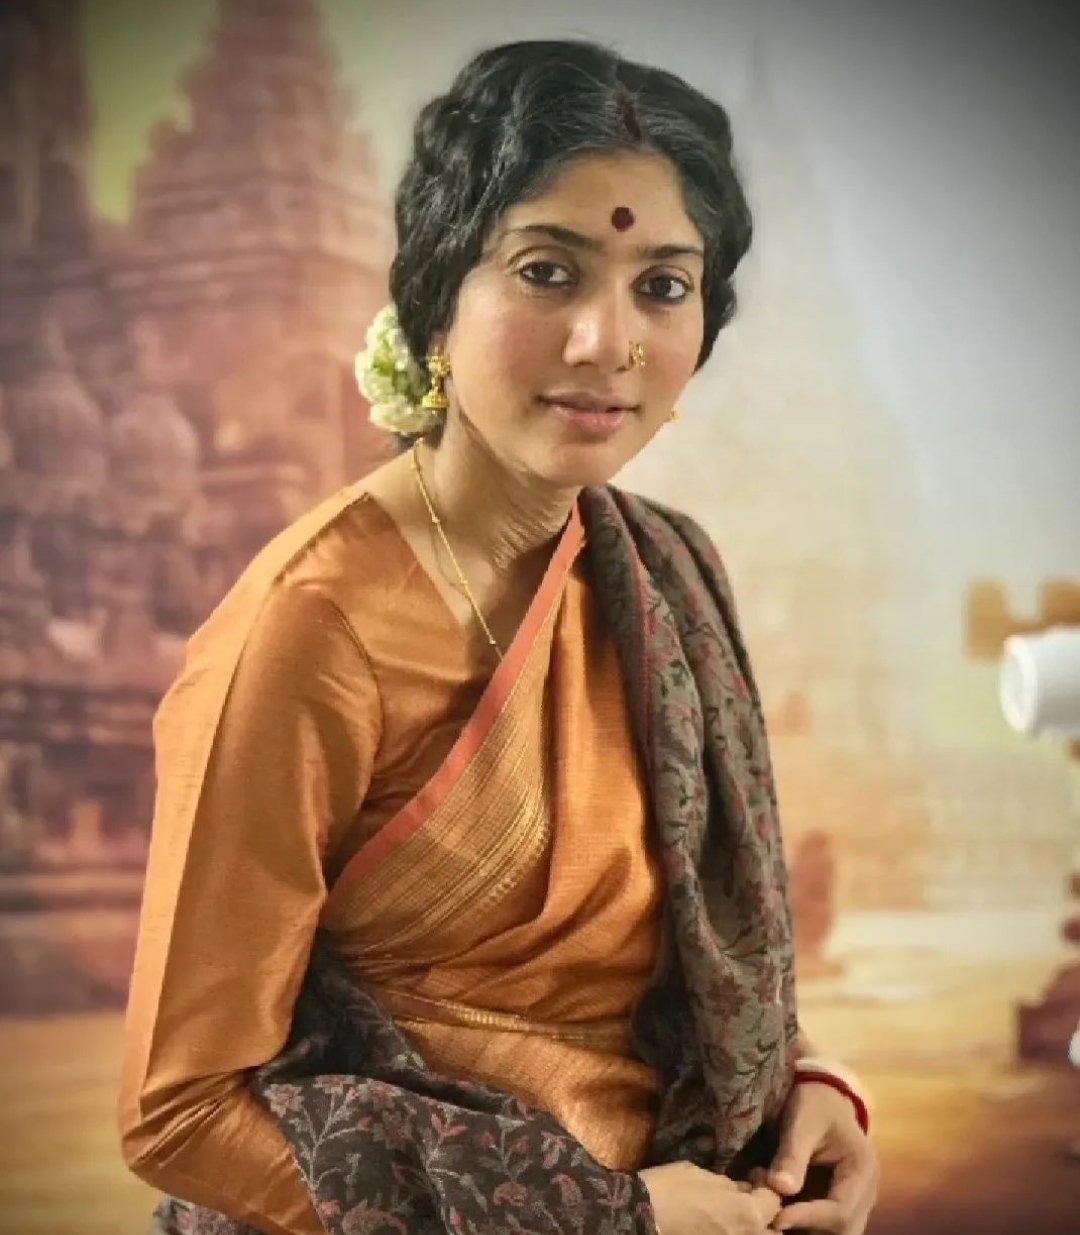 Actress Sai Pallavi Old Getup Photos Went Viral